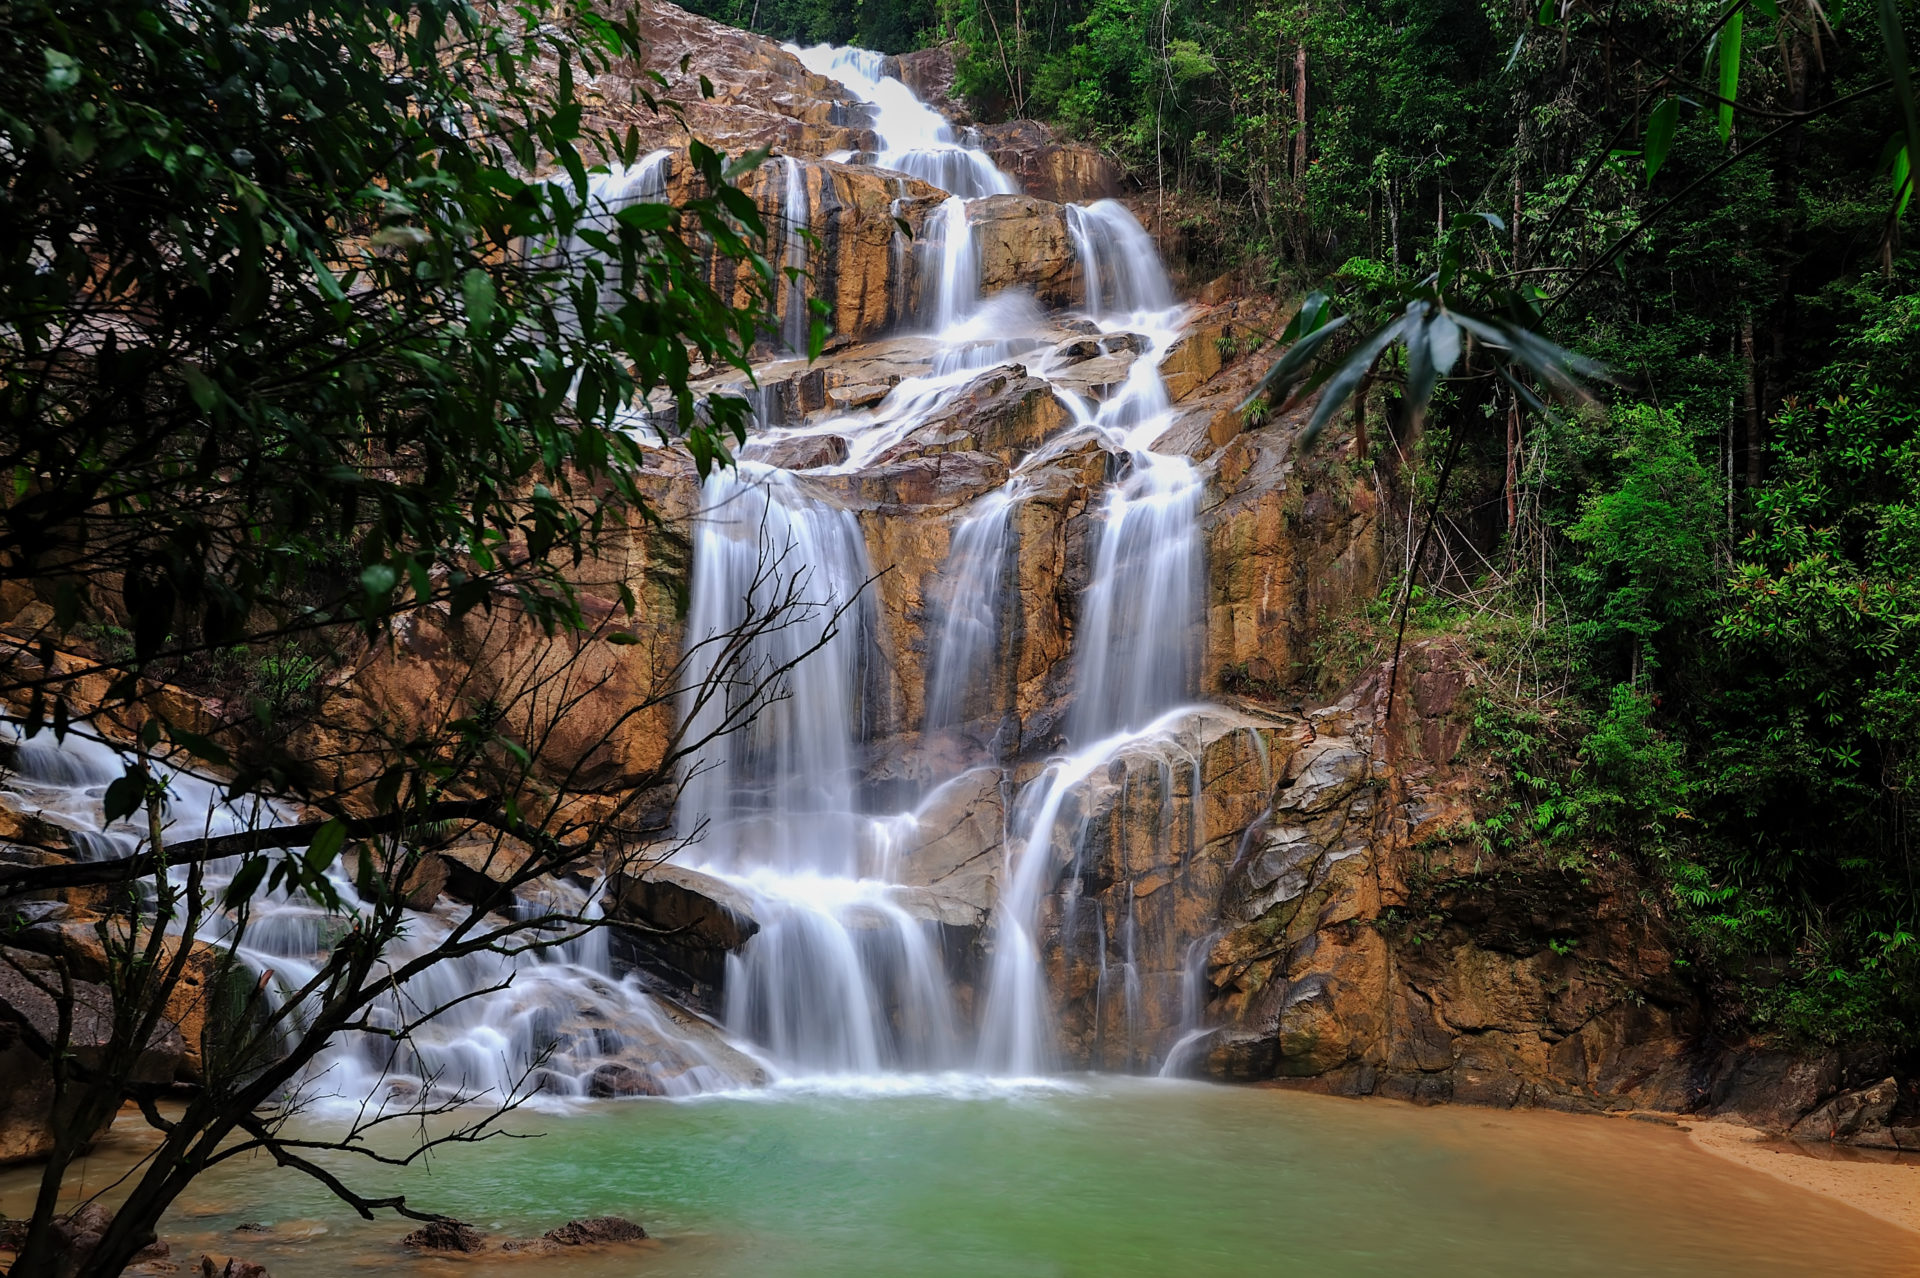  Sungai Pandan Waterfall